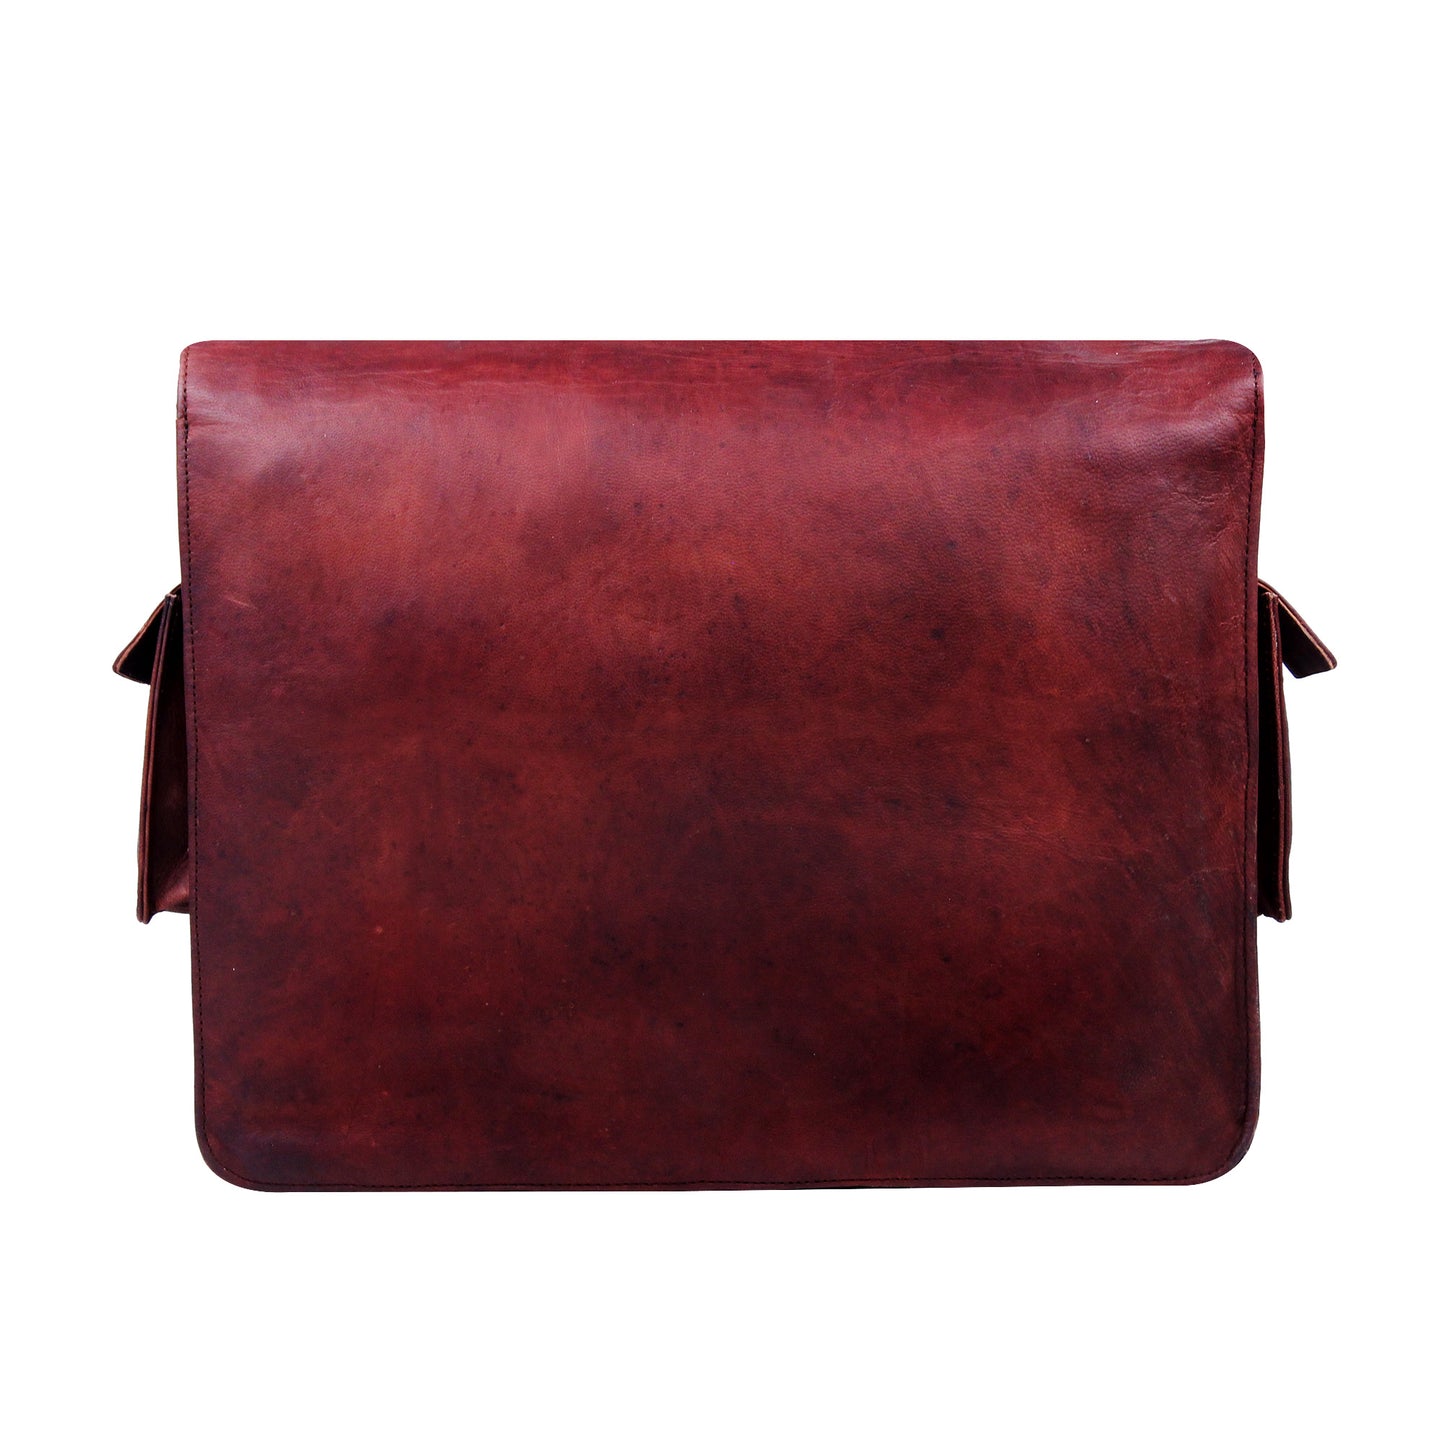 Brown Leather Messenger Bag with Adjustable Shoulder Straps